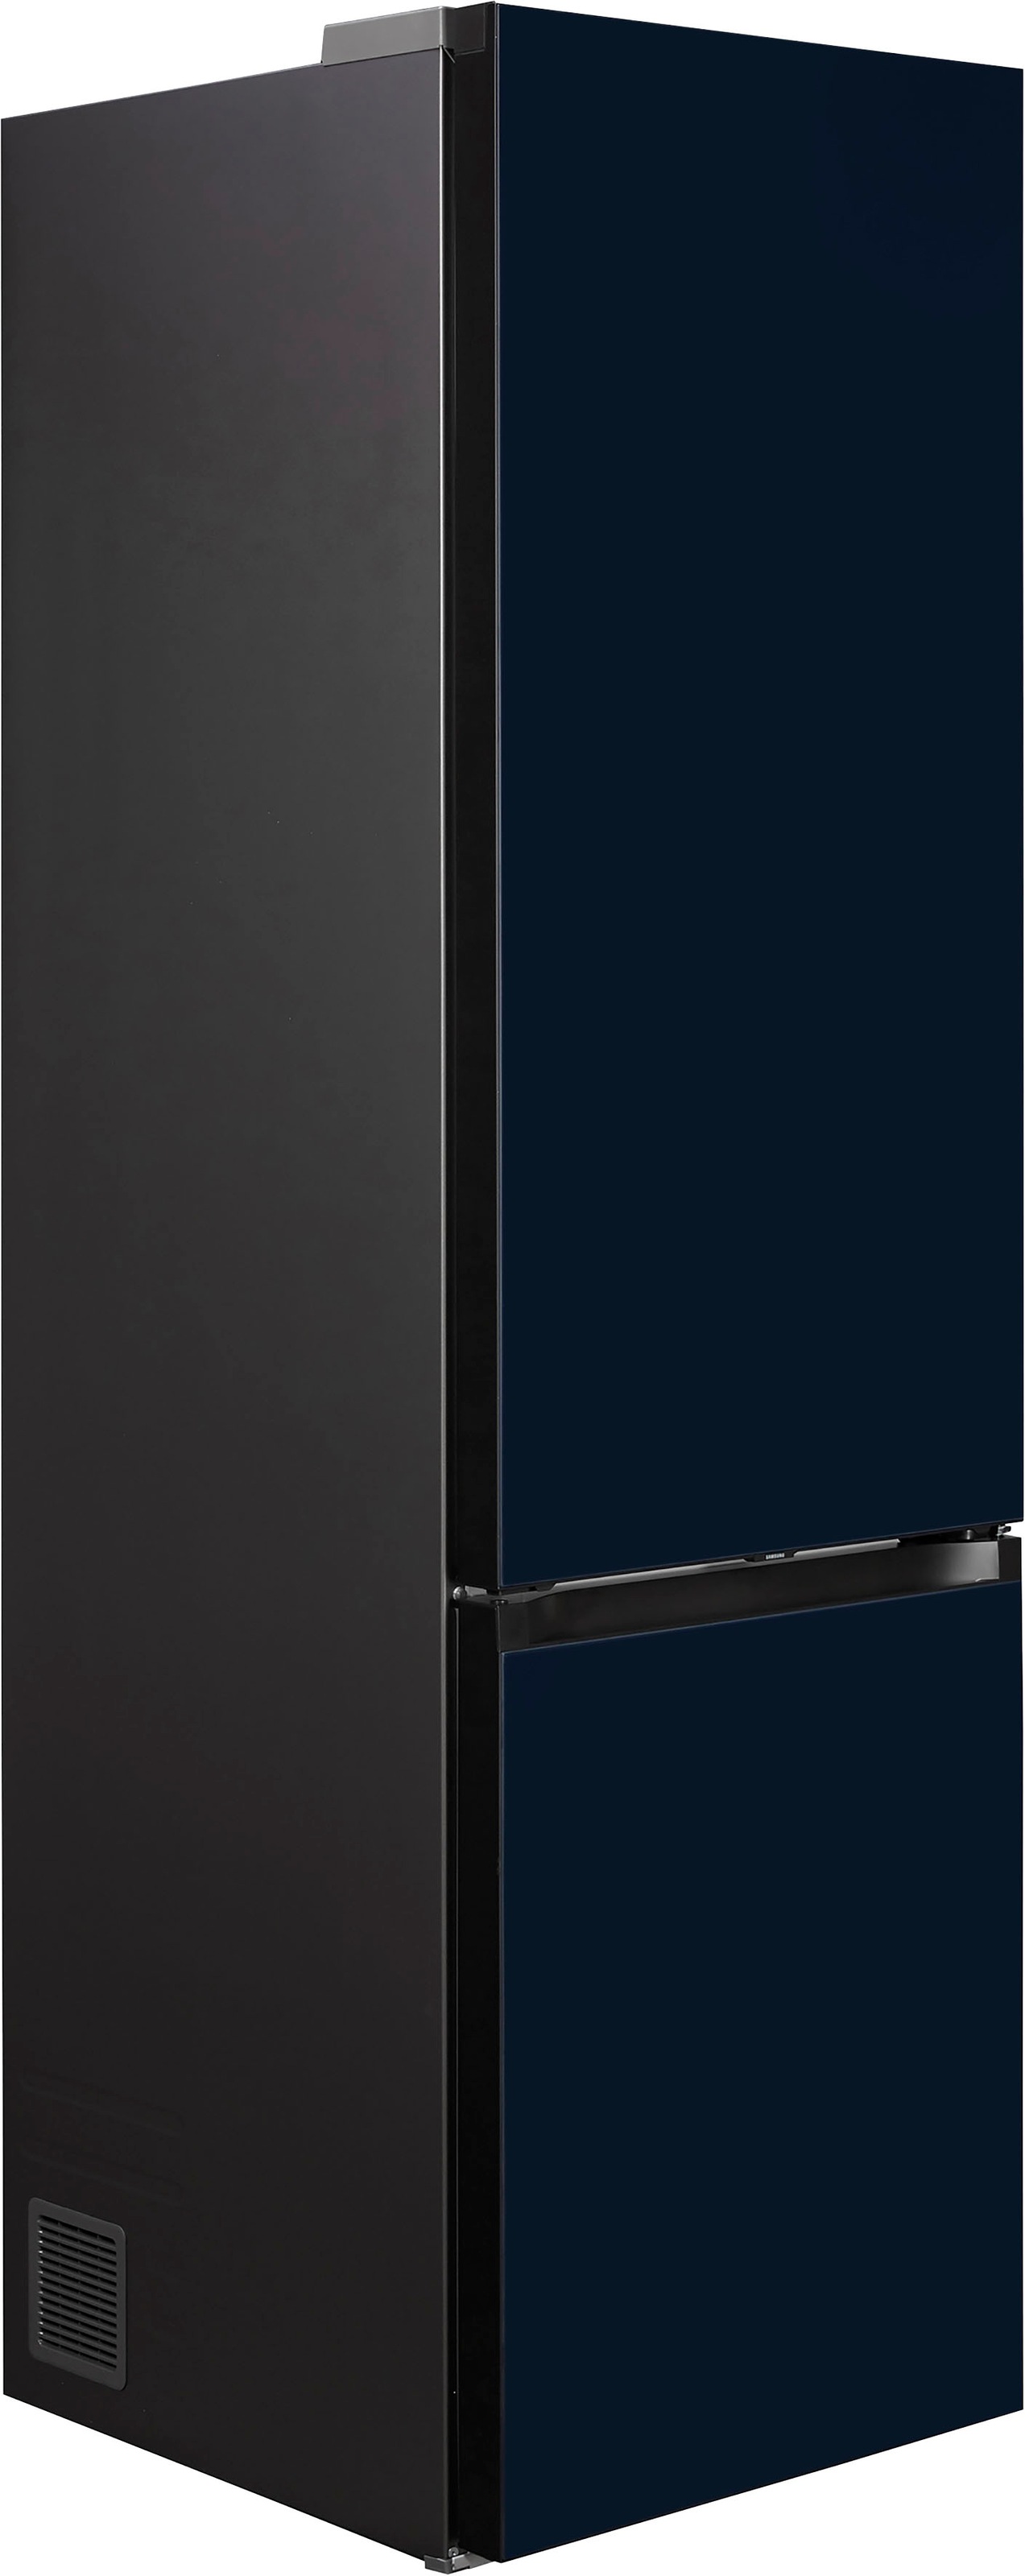 Samsung Kühl-/Gefrierkombination, Bespoke, RL38A6B6C41, 203 cm hoch, 59,5  cm breit online kaufen | Kühl-Gefrierkombinationen